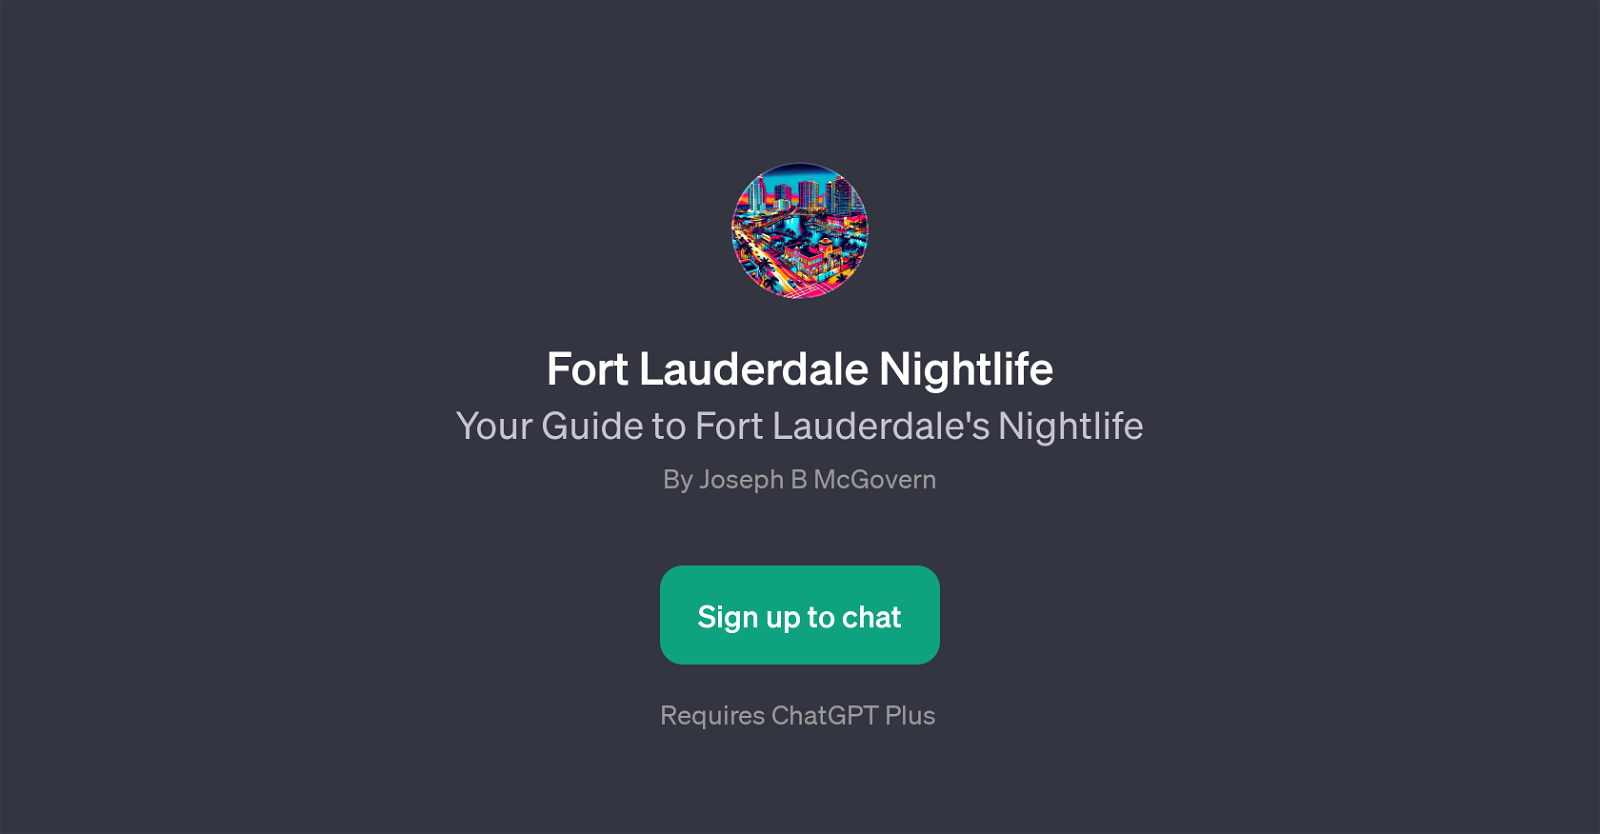 Fort Lauderdale Nightlife website